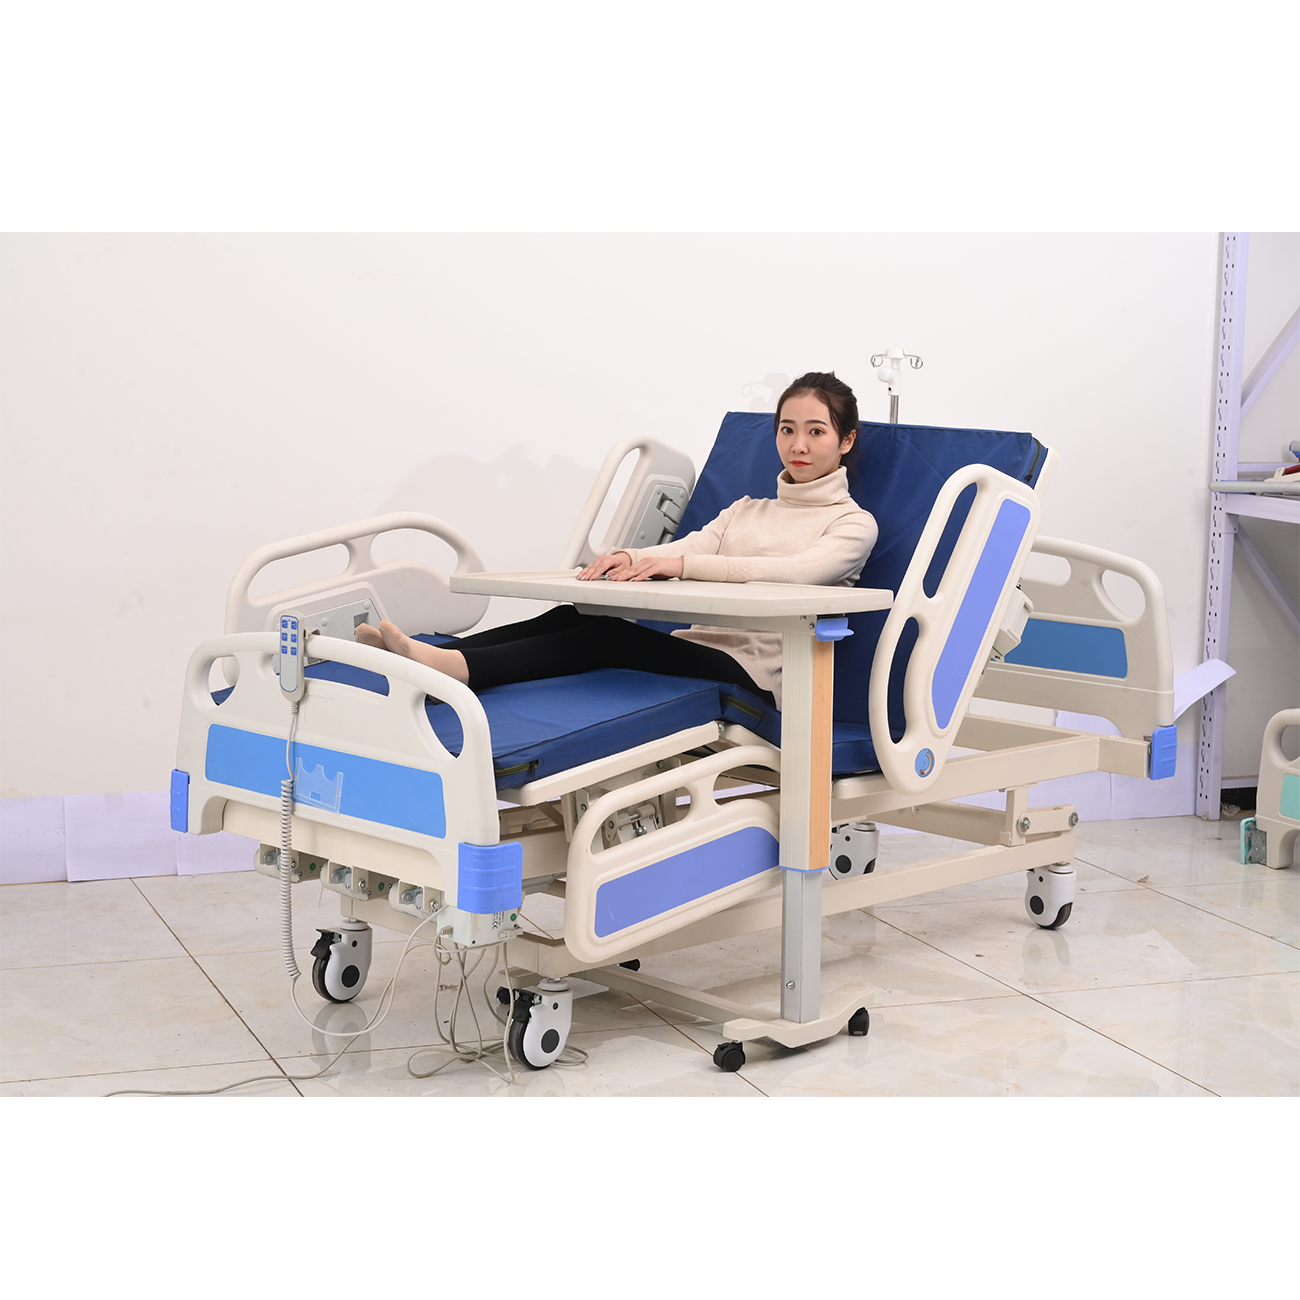 bpm-eb310-icu-automated-hospital-beds